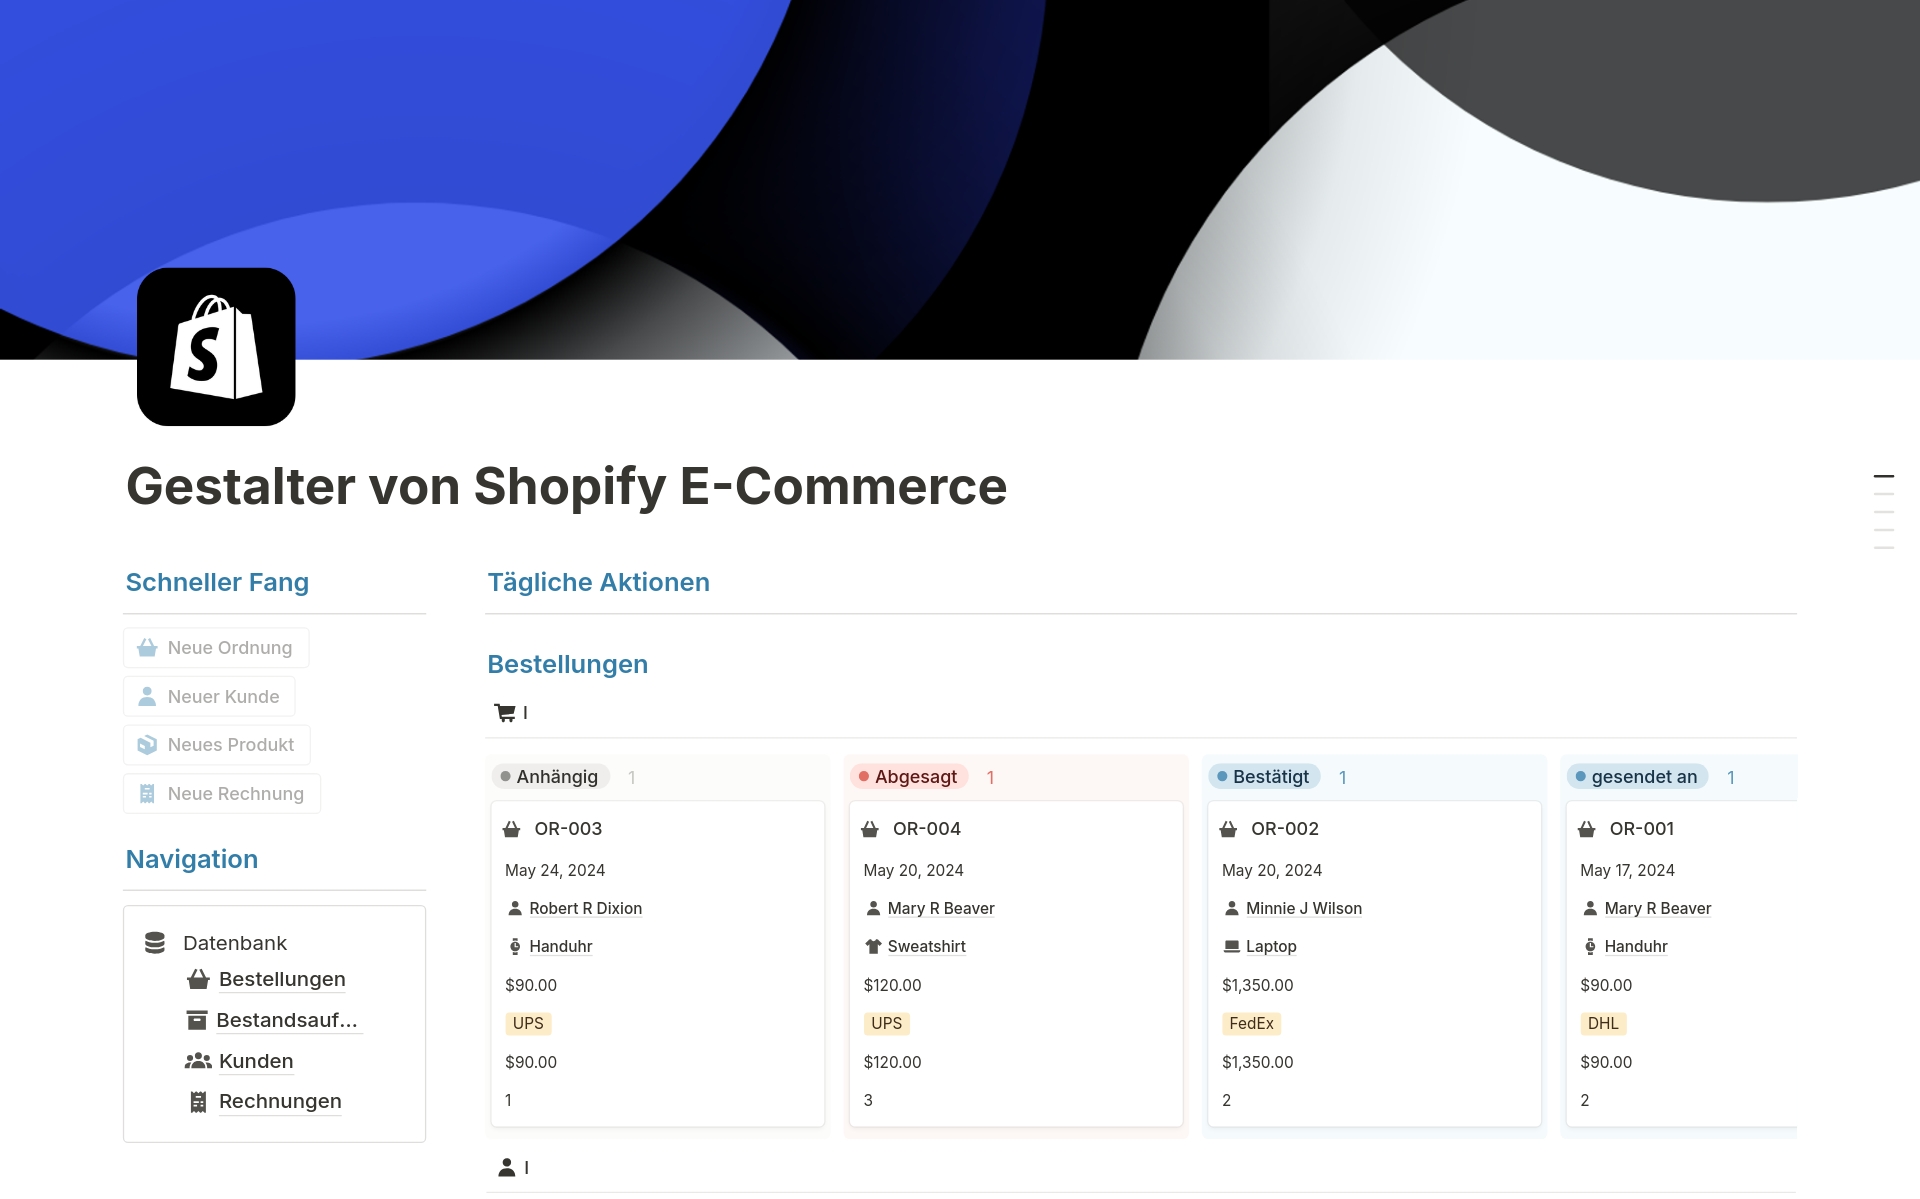 Vista previa de una plantilla para Gestalter von Shopify E-Commerce